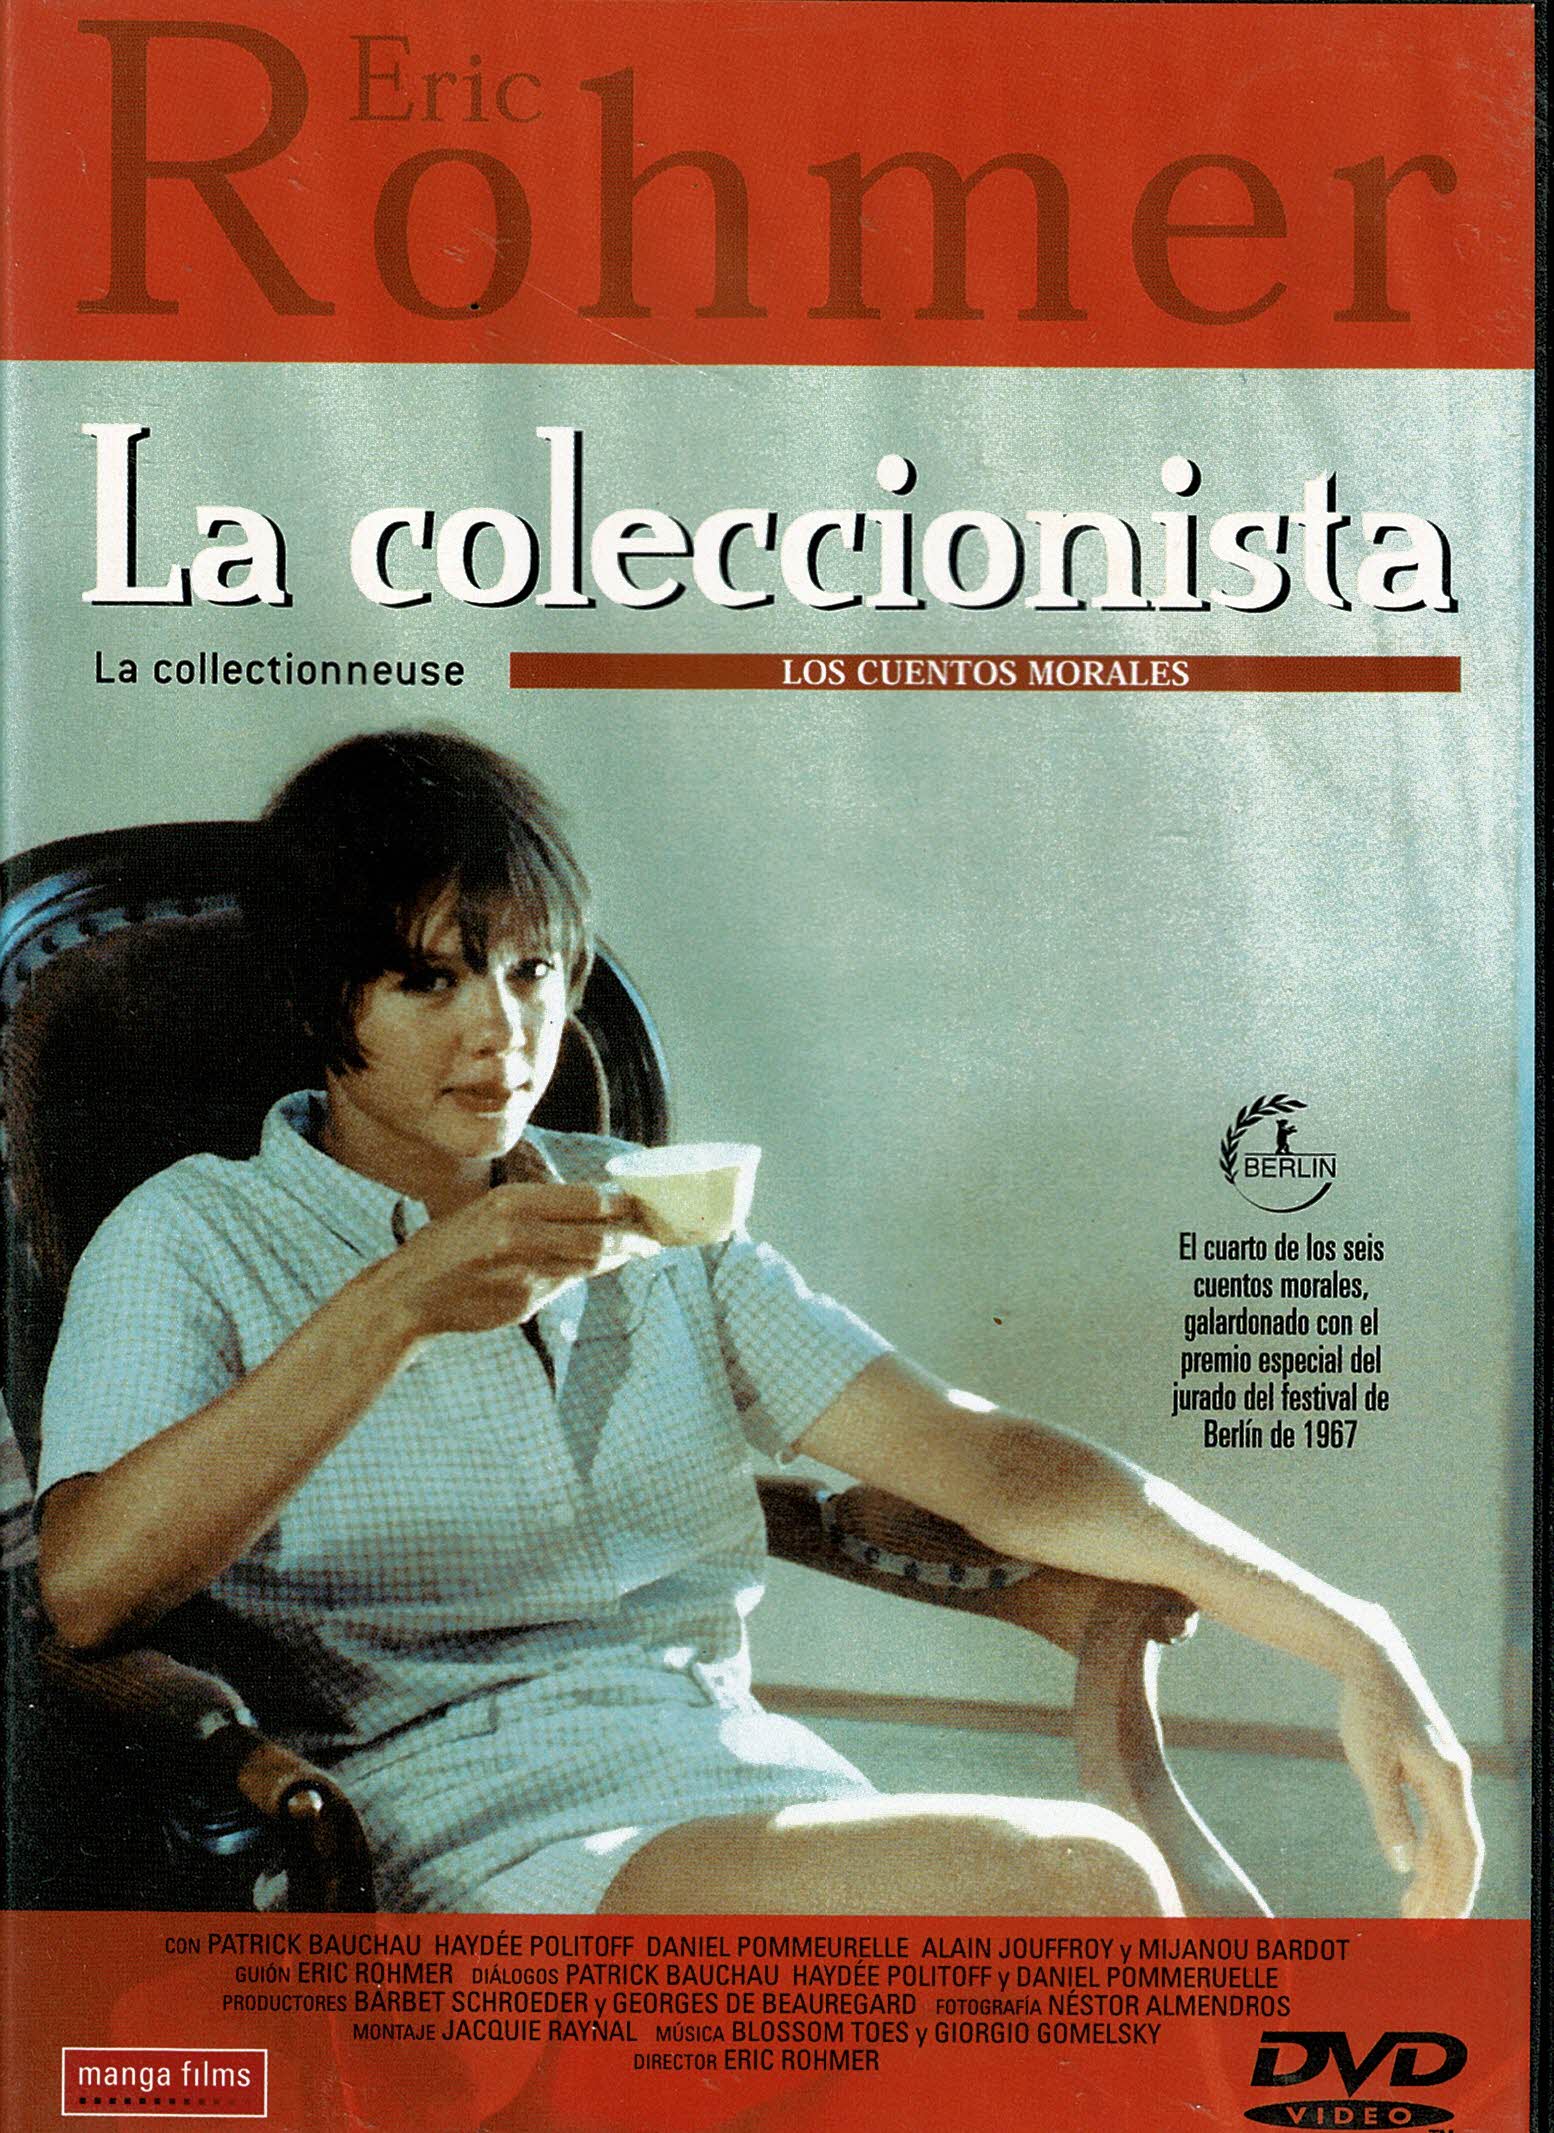 La coleccionista (1967) Eric Rohmer